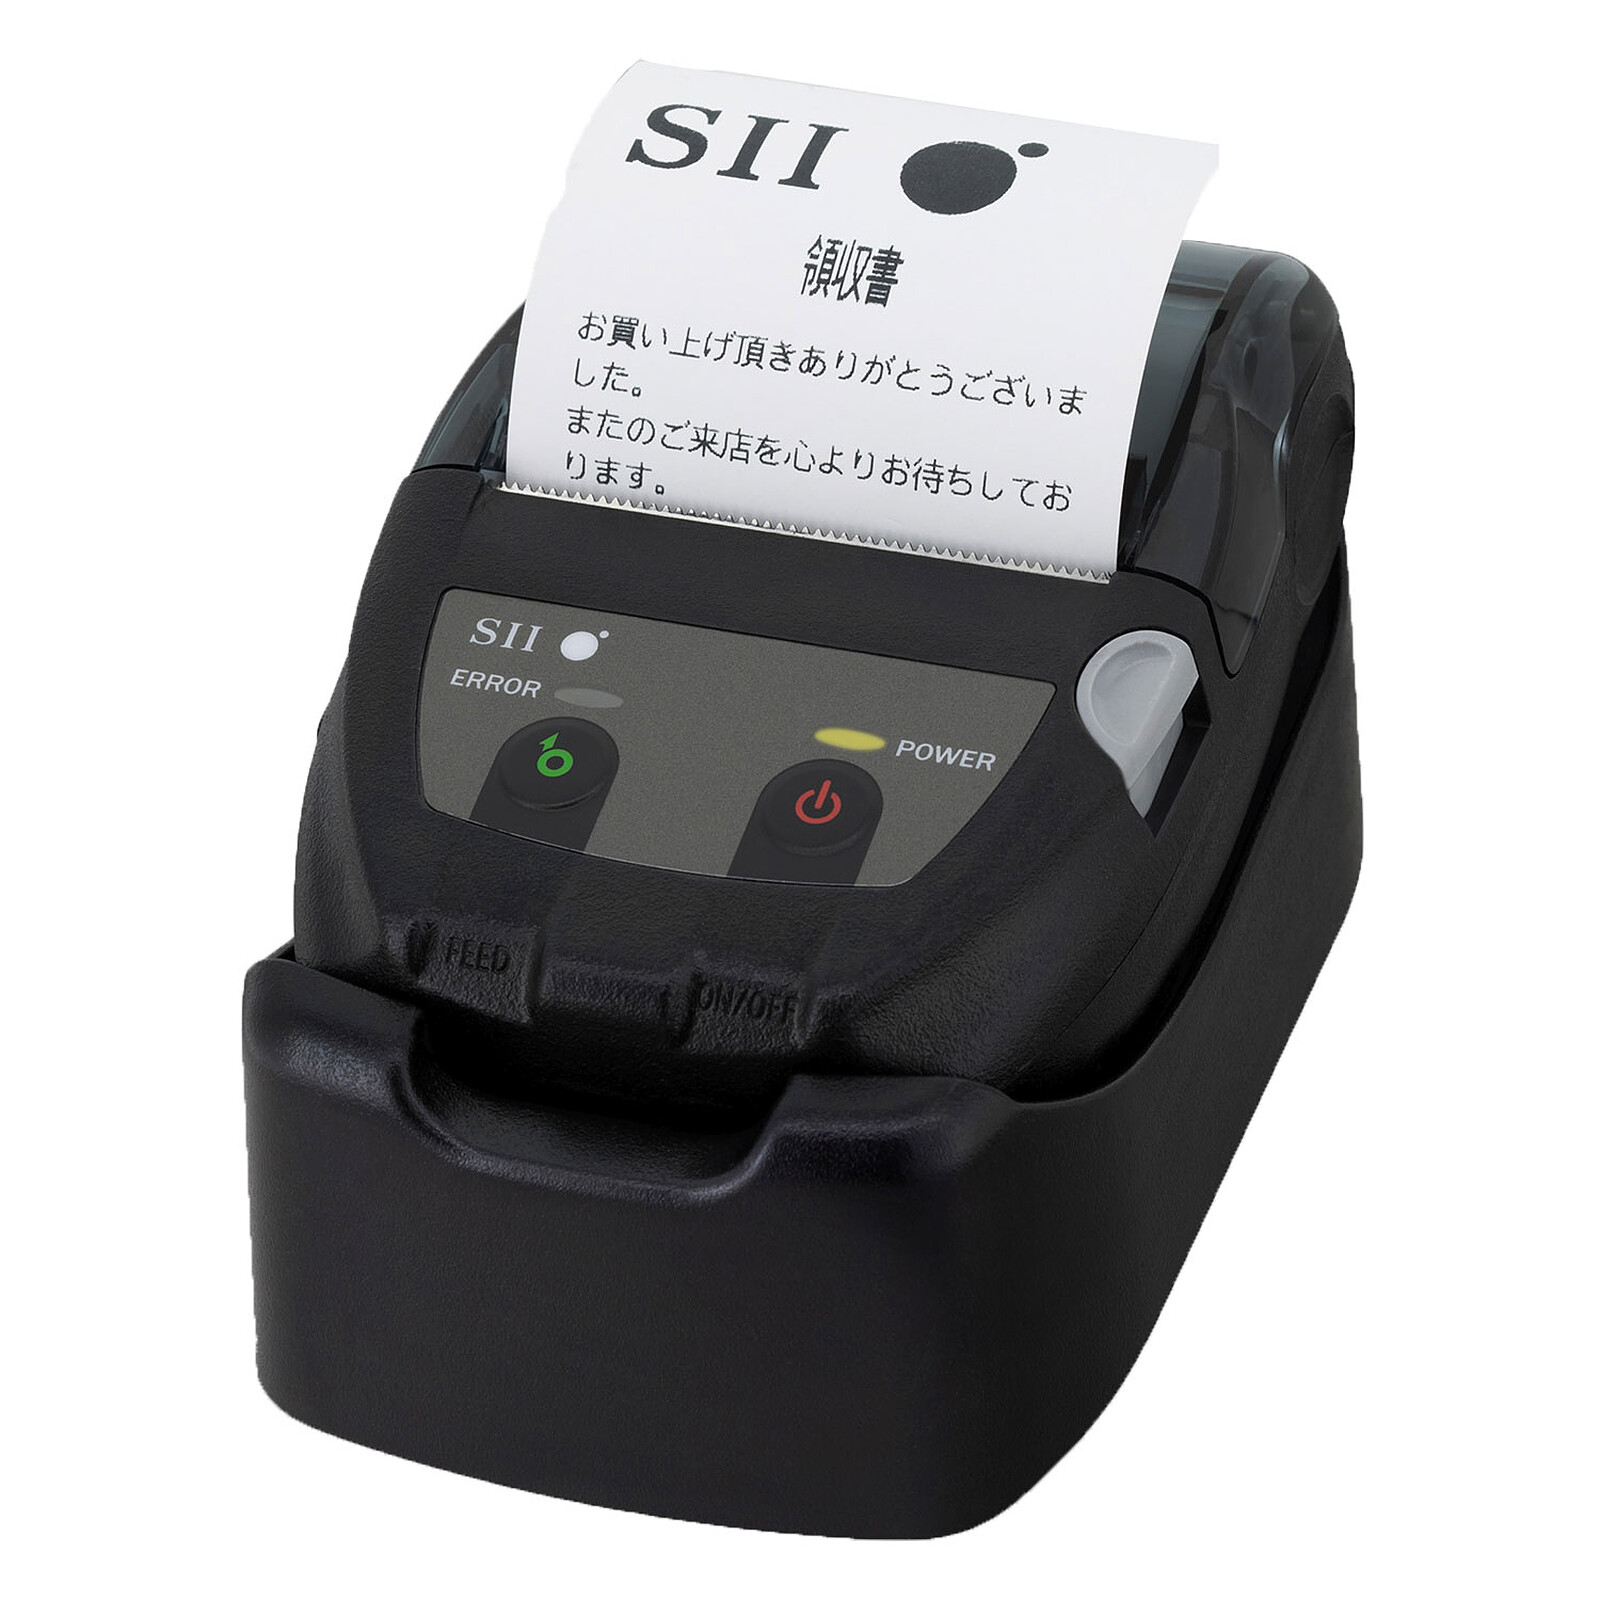 Seiko MP-B20 - Thermal printer Seiko Instruments on LDLC